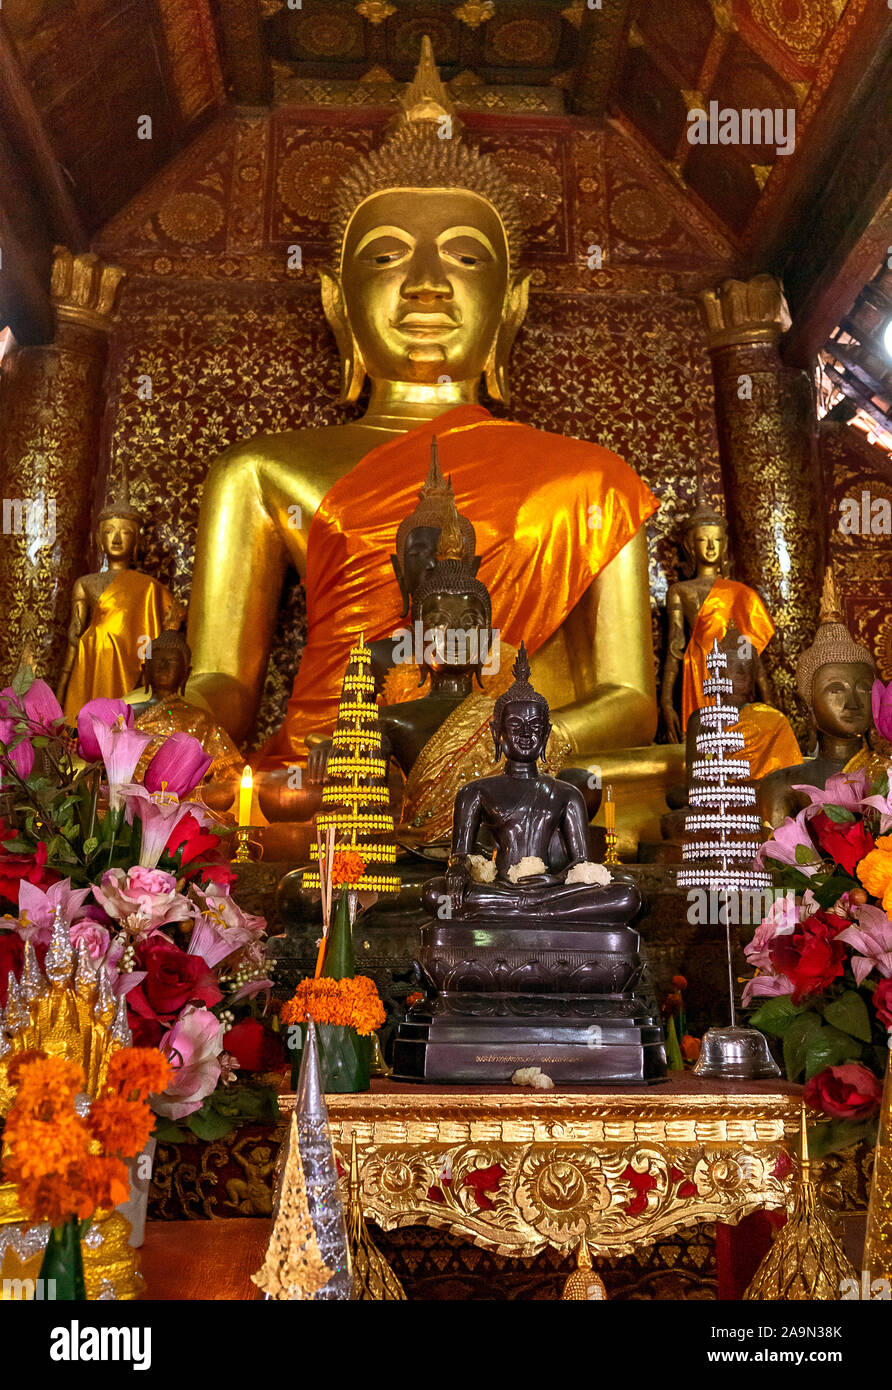 Buddha-Statuen und Blumenangebote in einem Tempel oder Wat in der malerischen Stadt Luang Prabang in Laos, die zum UNESCO-Weltkulturerbe gehört. Südostasien. Stockfoto